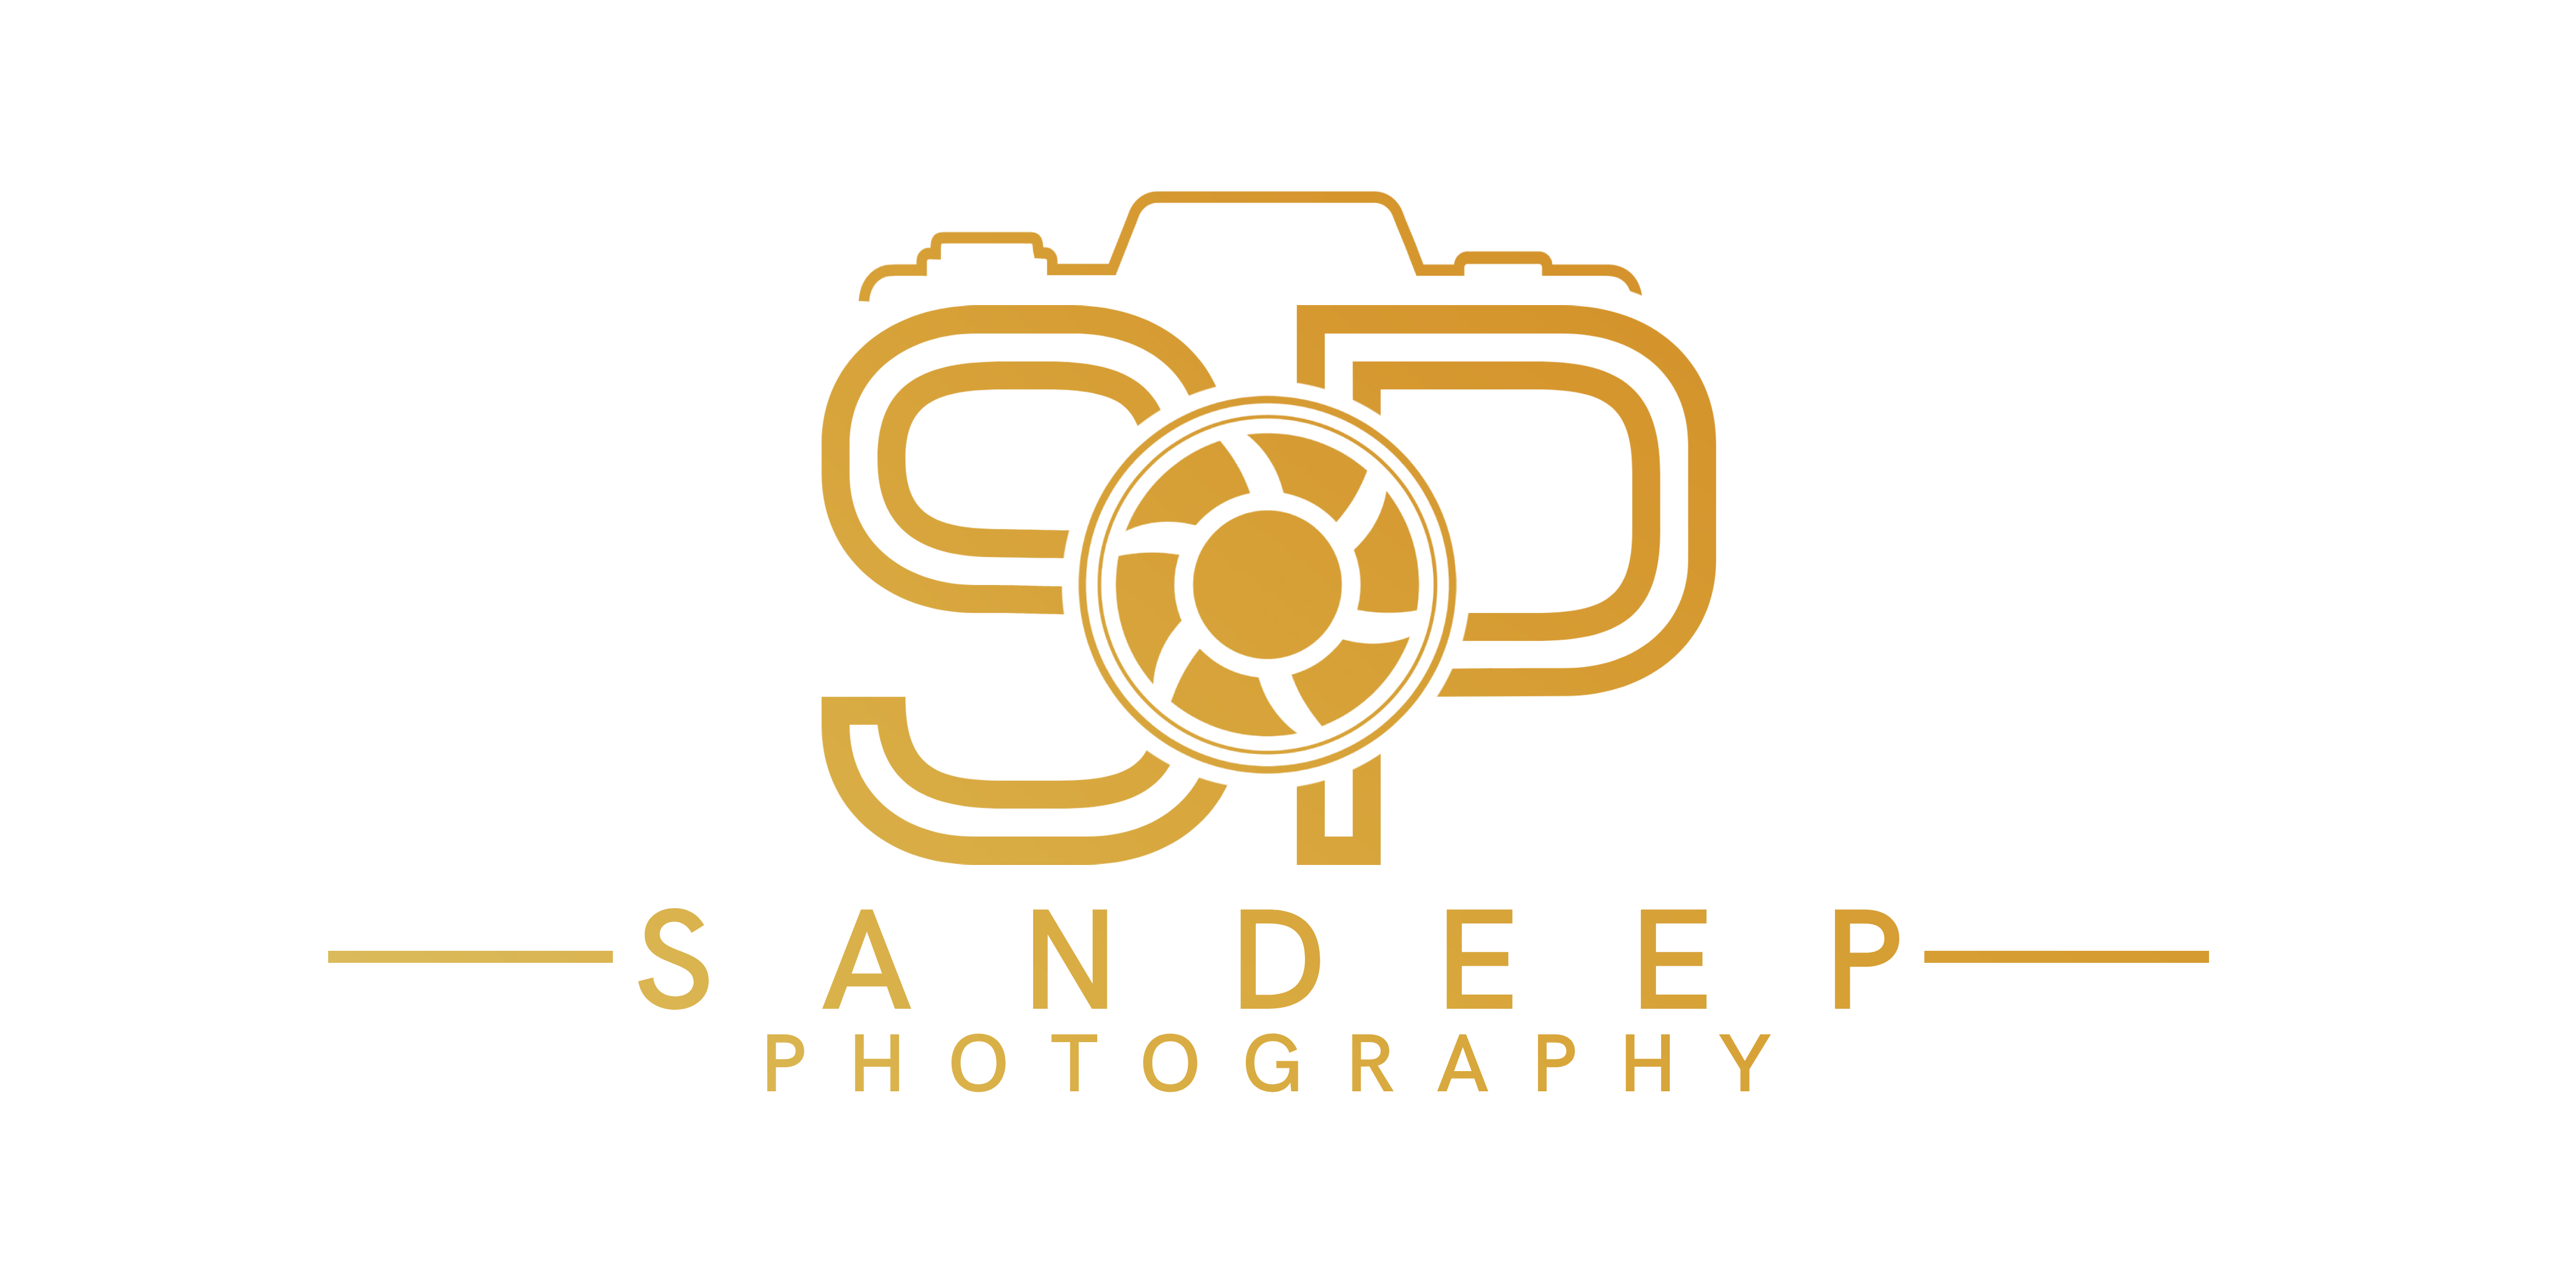 Sandeep photography